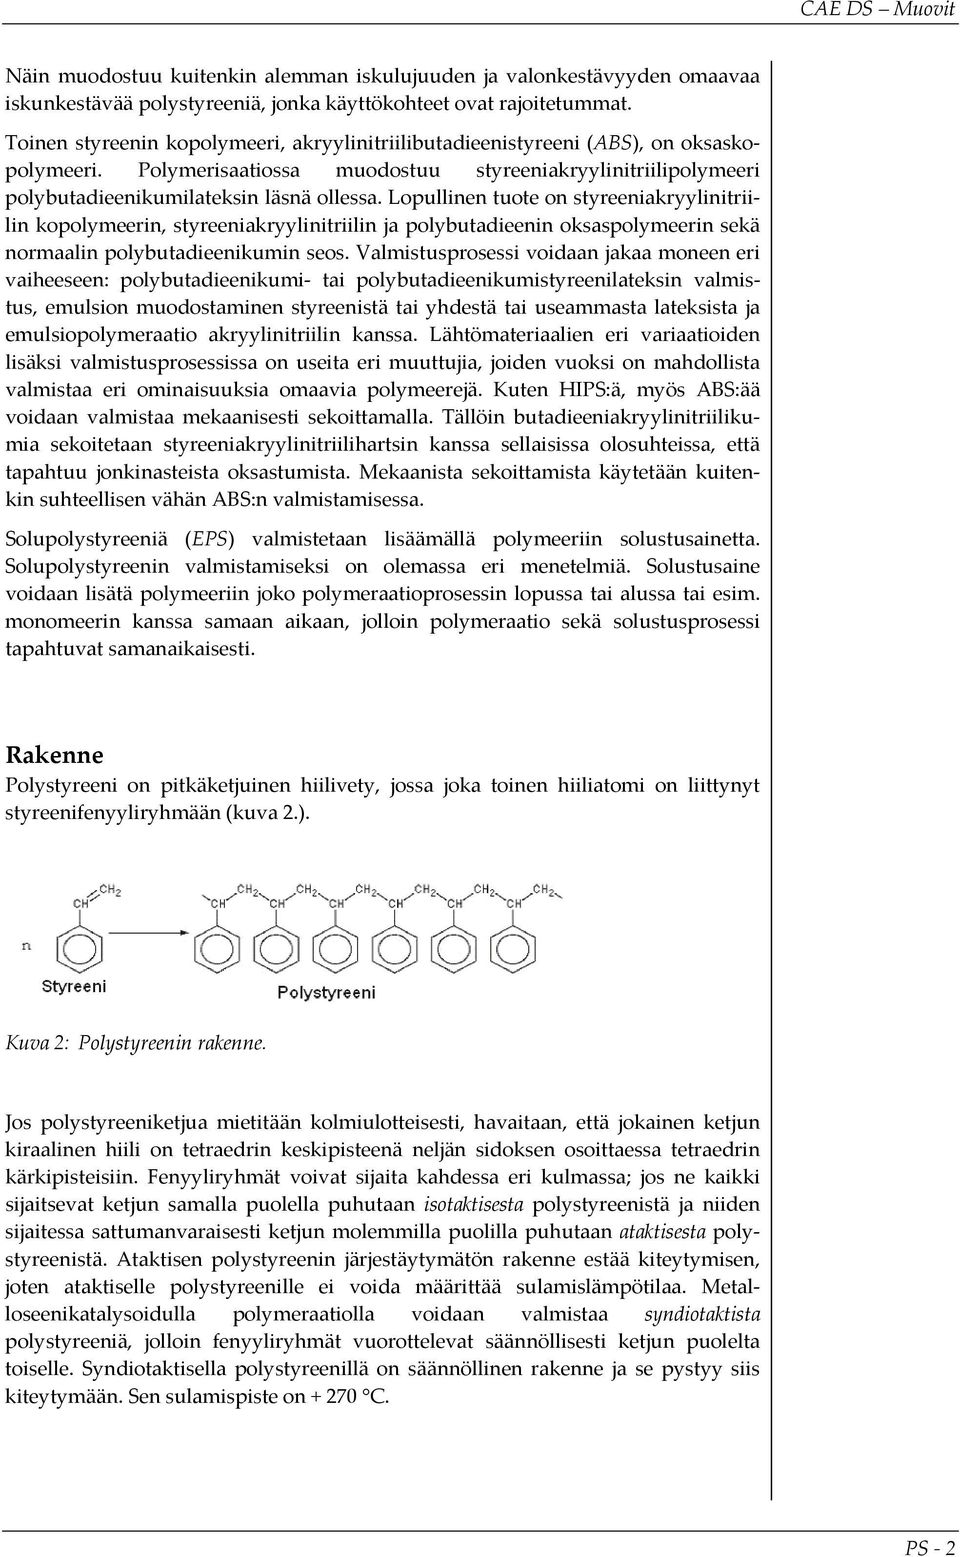 Lopullinen tuote on styreeniakryylinitriilin kopolymeerin, styreeniakryylinitriilin ja polybutadieenin oksaspolymeerin sekä normaalin polybutadieenikumin seos.